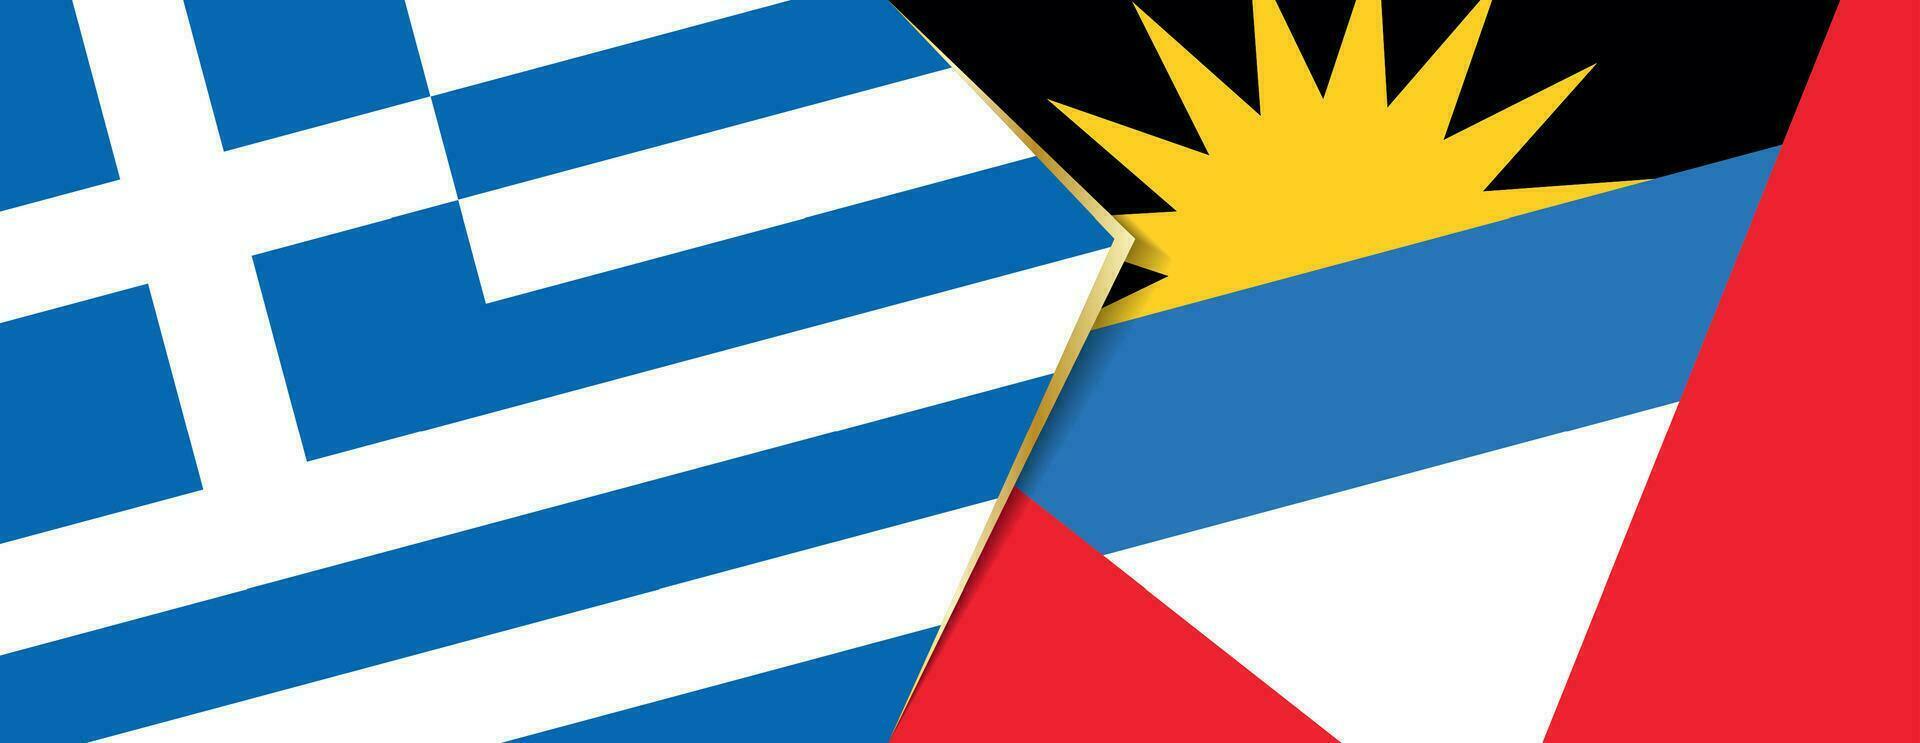 grekland och antigua och barbuda flaggor, två vektor flaggor.